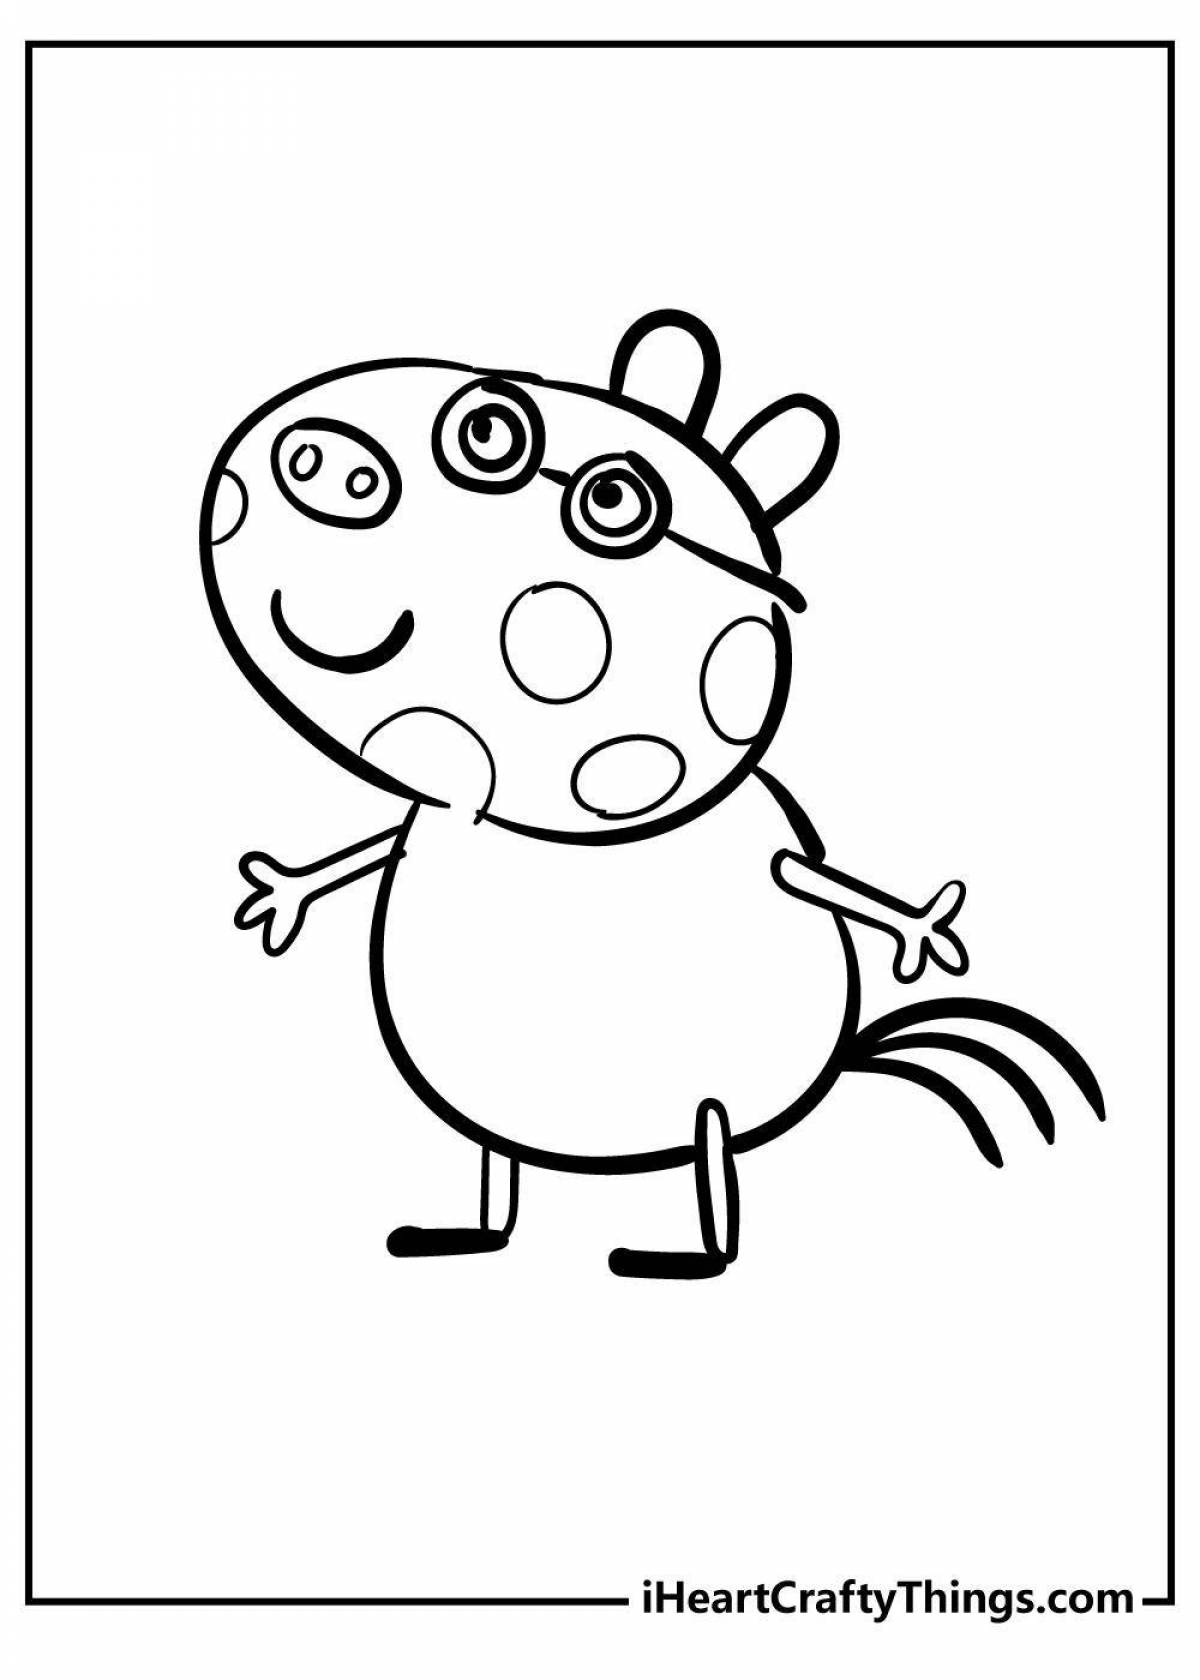 Легкий рисунок свинки пеппы